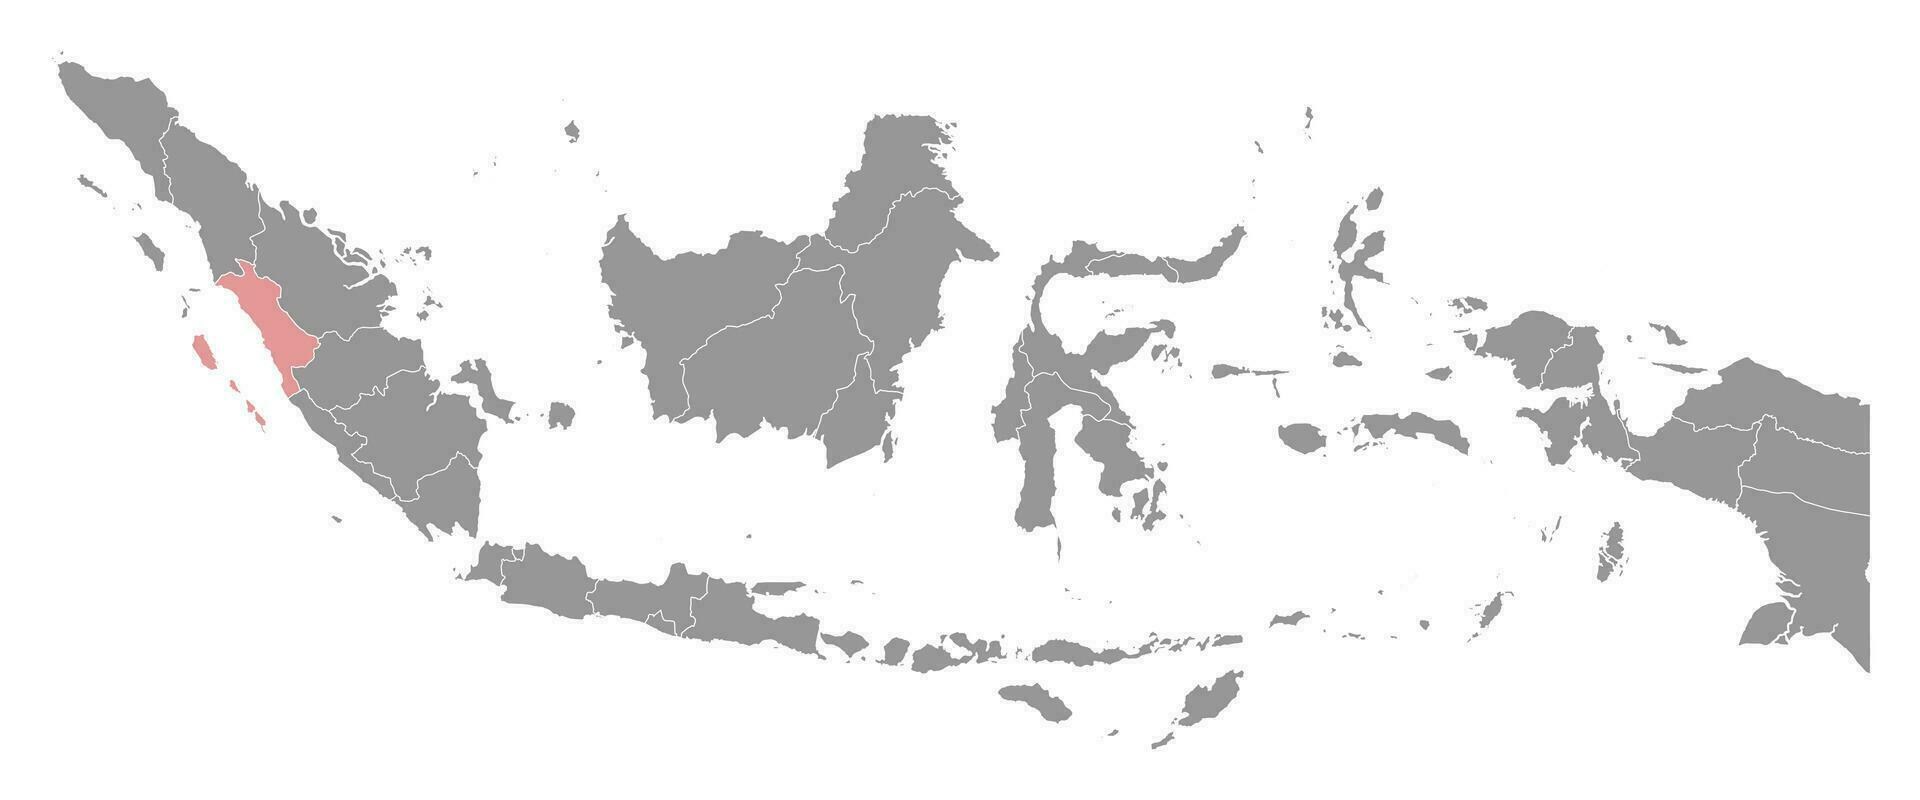 Oeste Sumatra provincia mapa, administrativo división de Indonesia. vector ilustración.